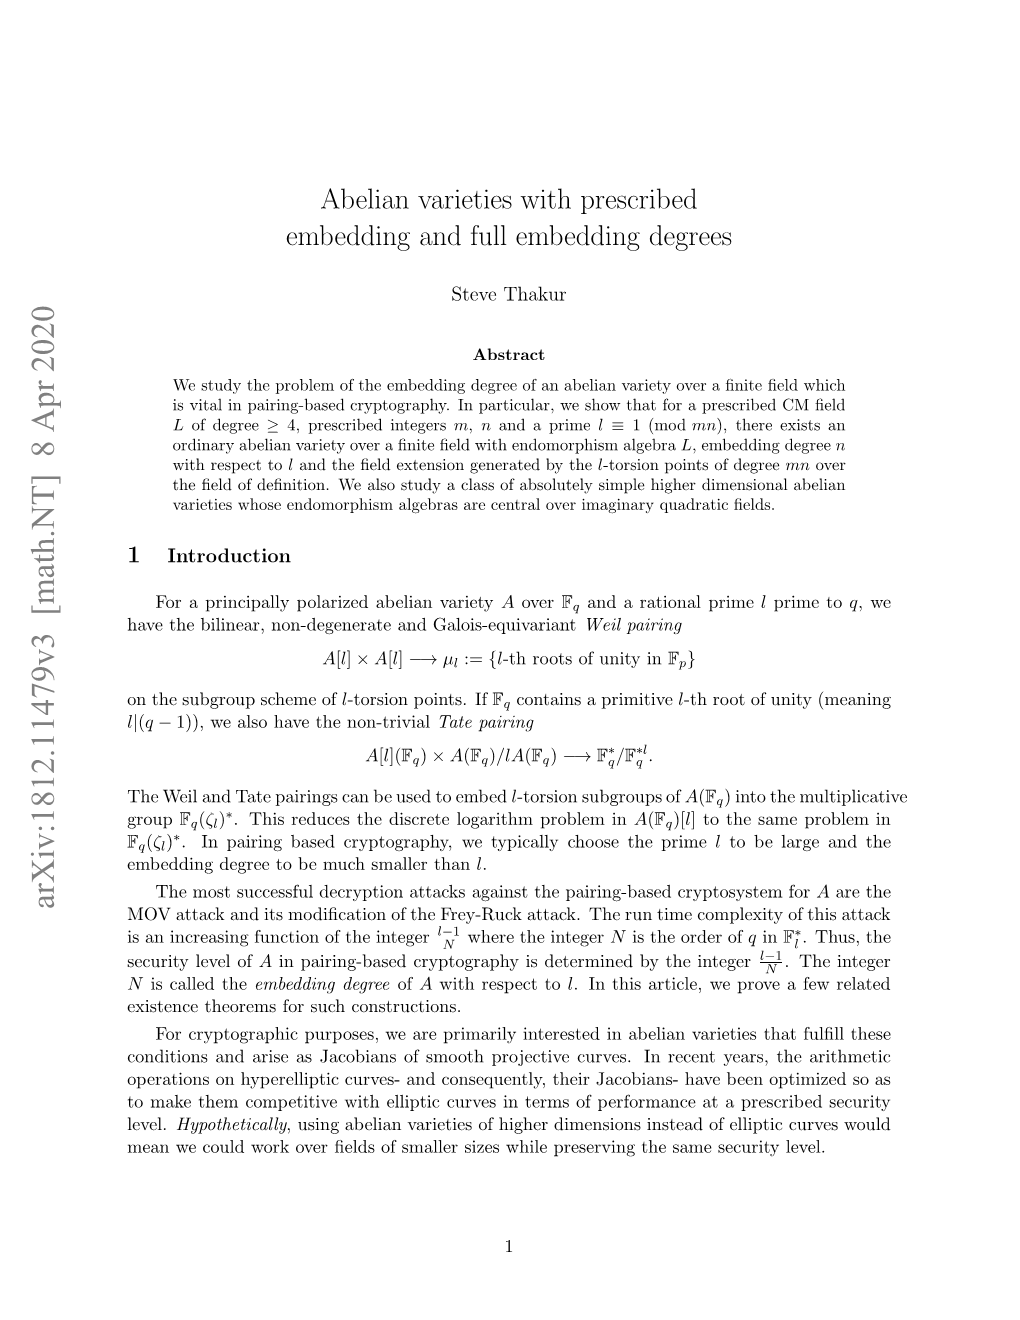 Abelian Varieties in Pairing-Based Cryptography